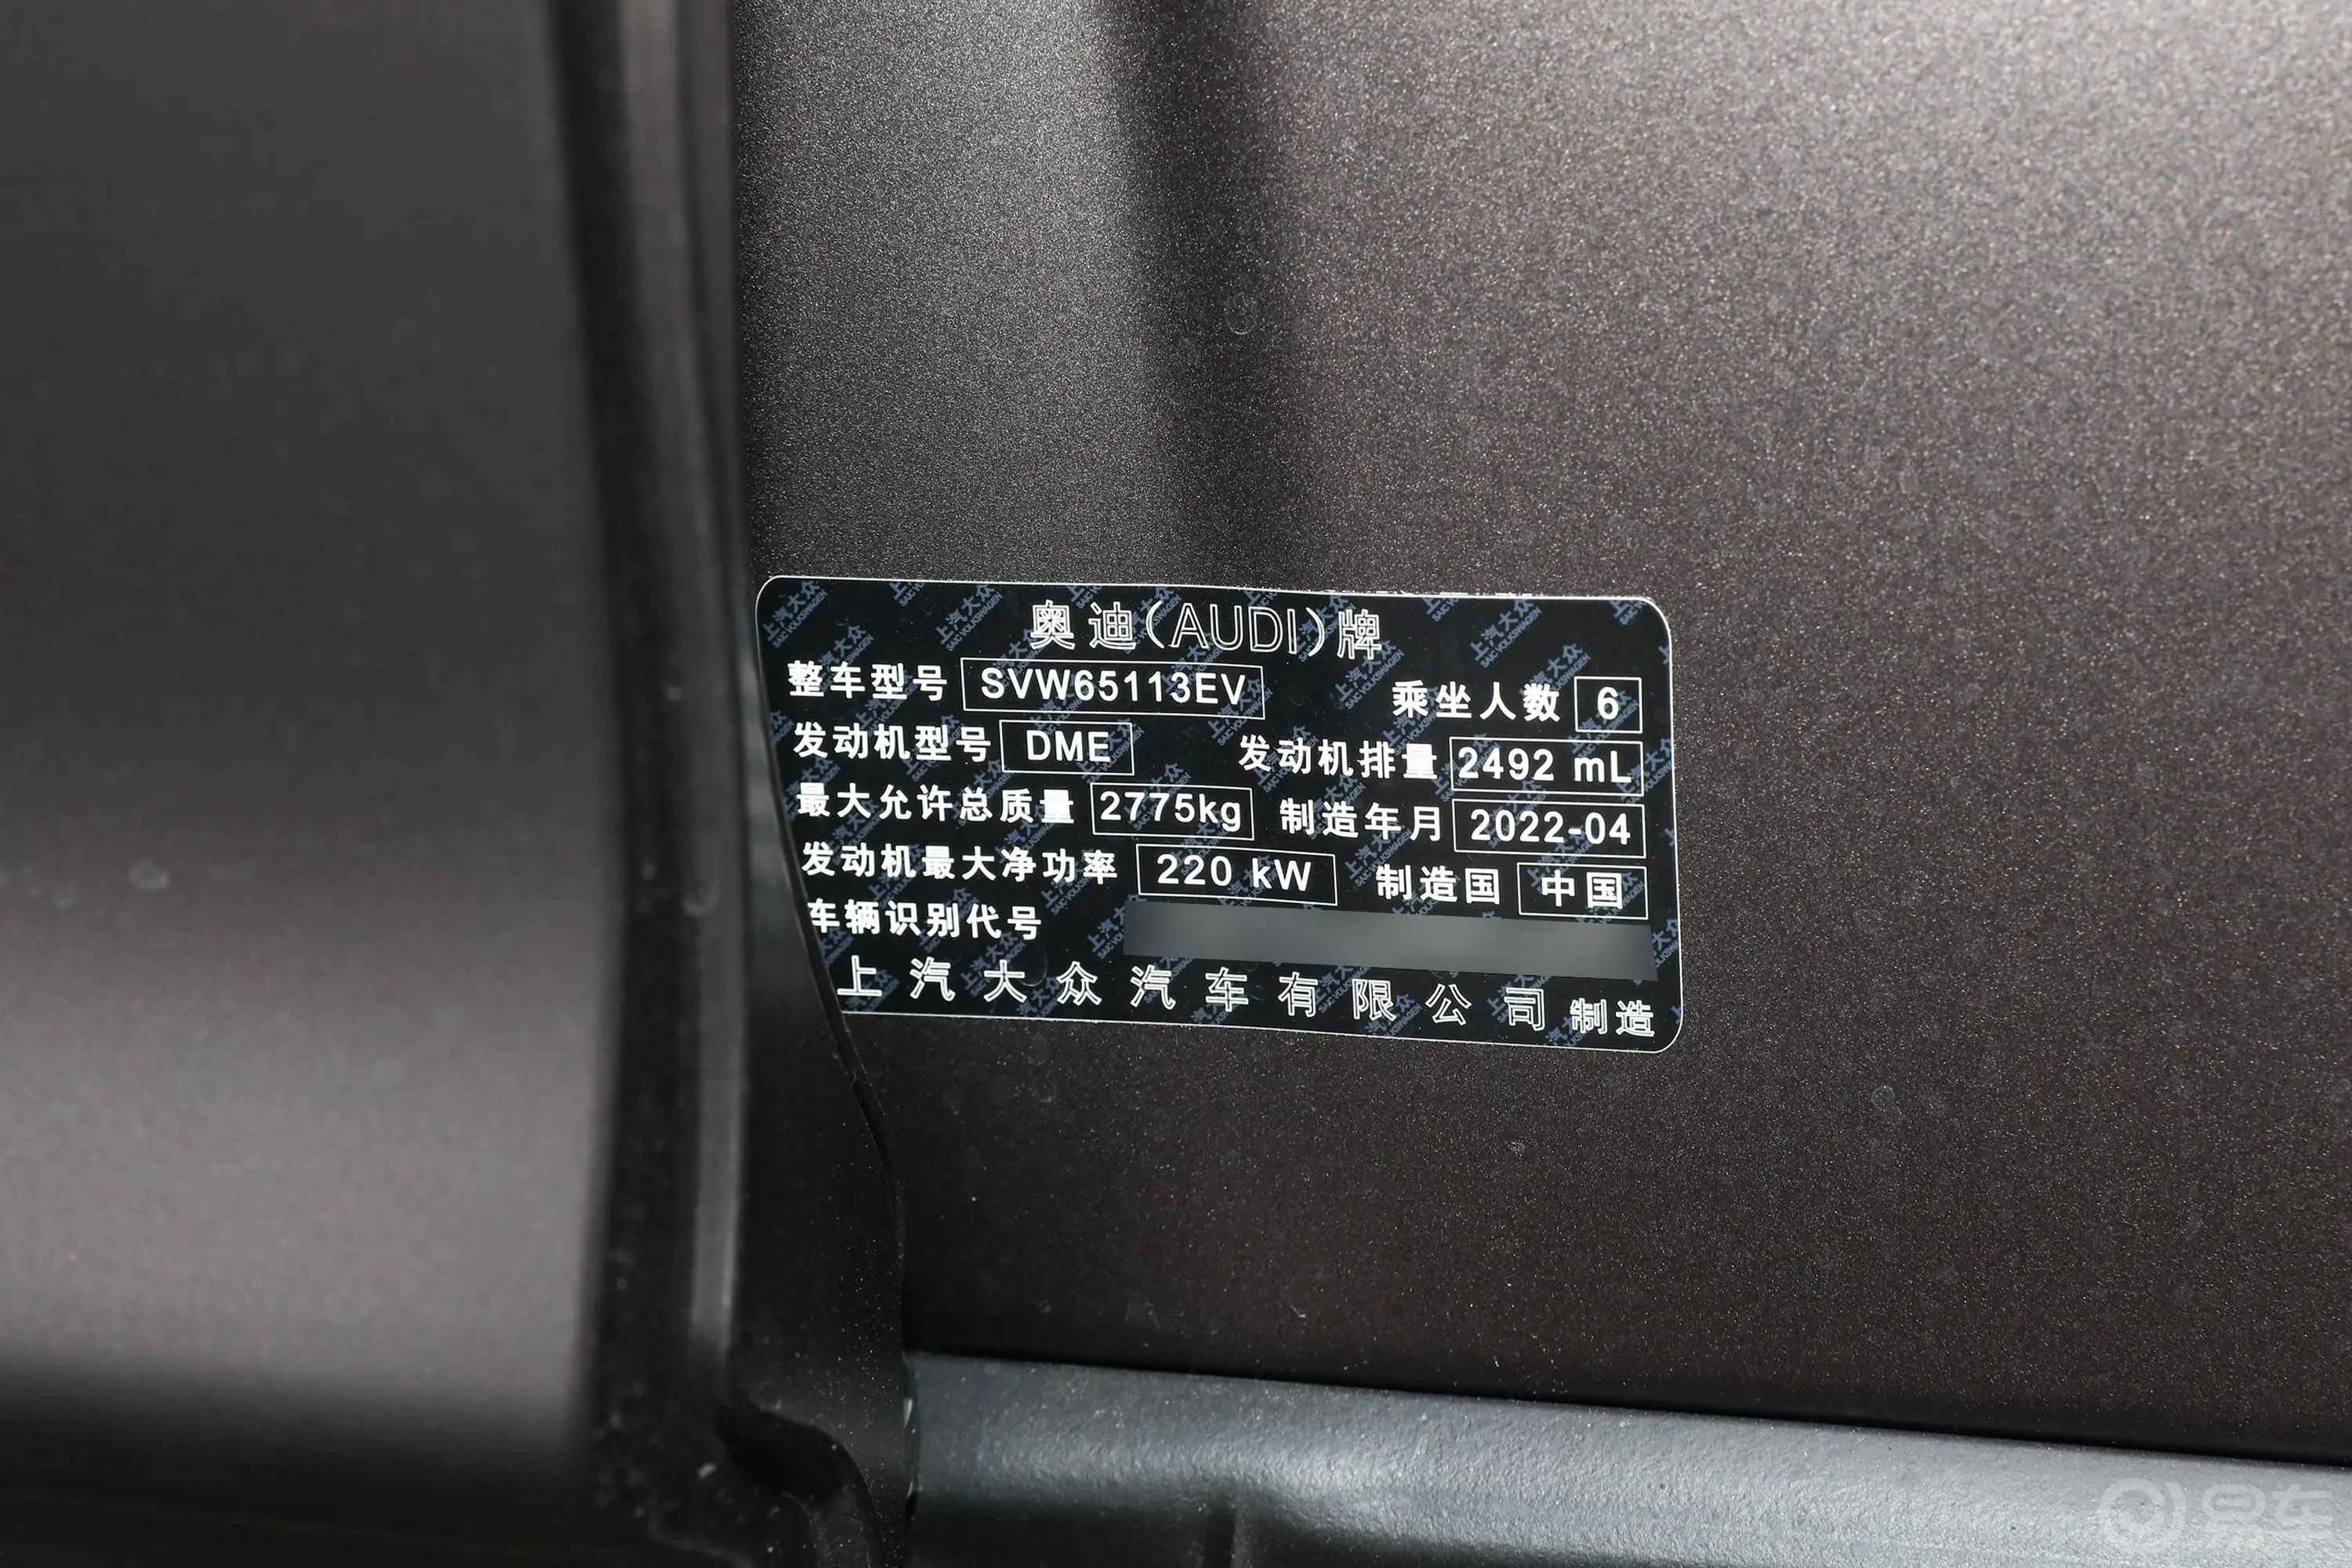 奥迪Q650 TFSI quattro Roadjet 凌云版edition one 飞骑套装 6座车辆信息铭牌